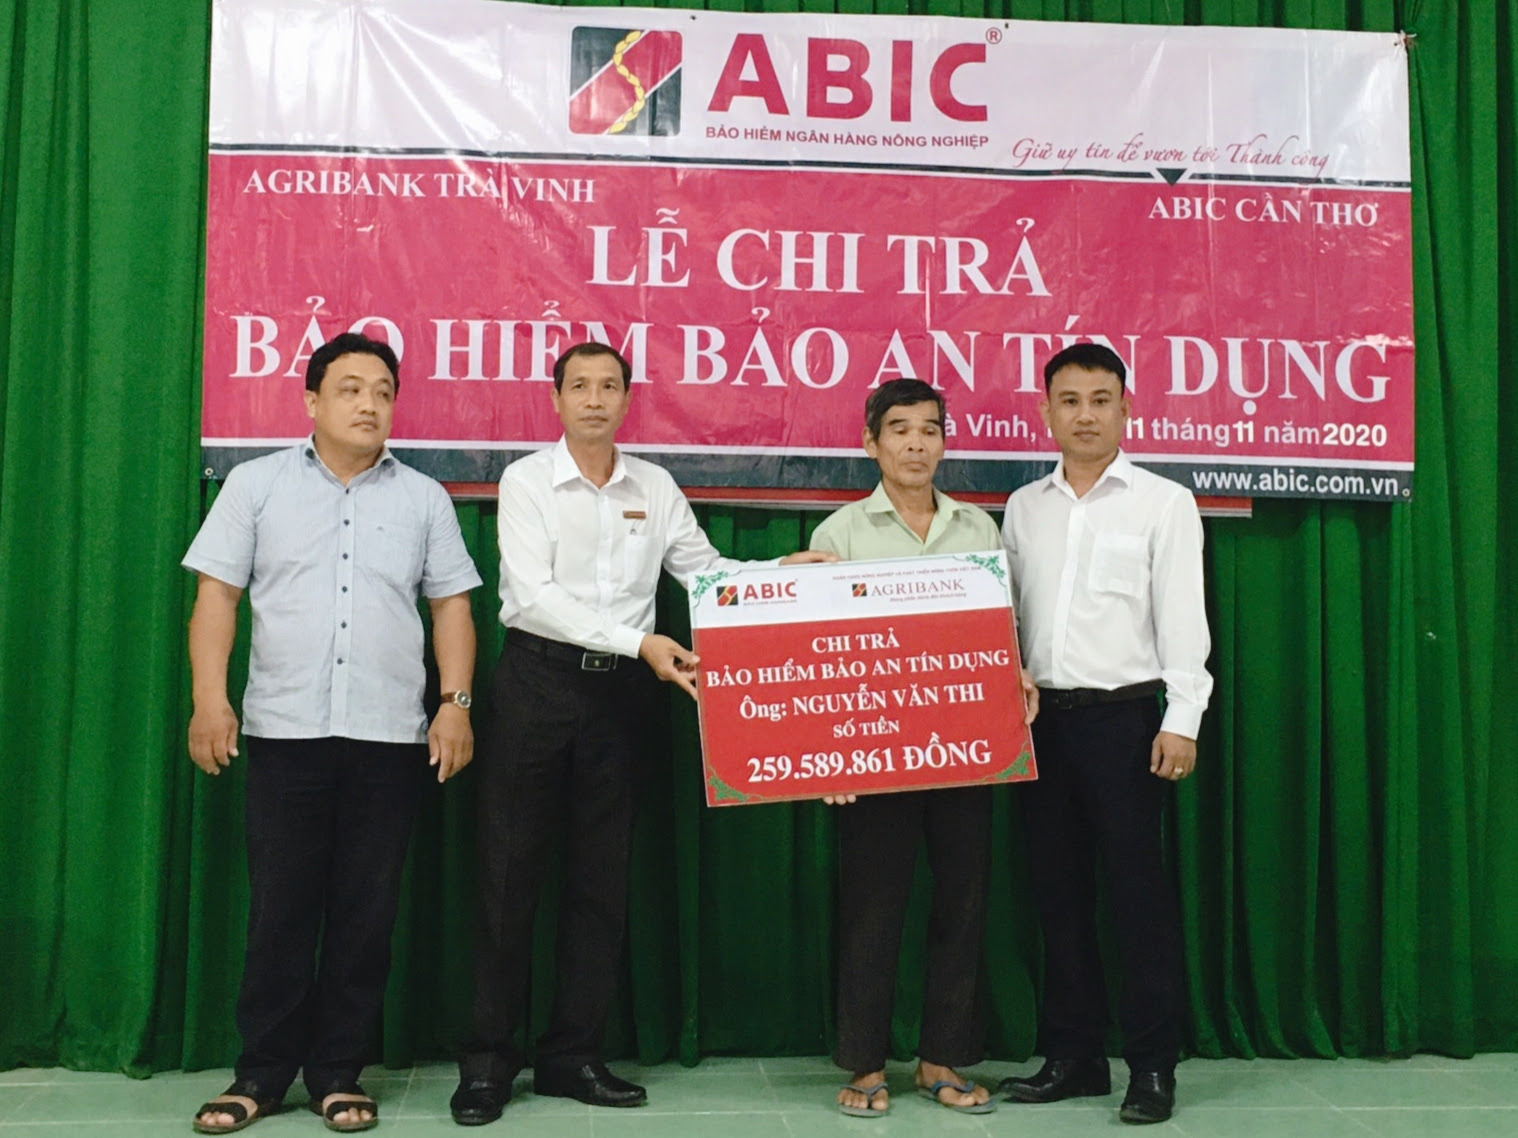 Trà Vinh: Agribank huyện Trà Cú chi trả quyền lợi Bảo hiểm Bảo an tín dụng cho khách hàng - Ảnh 1.